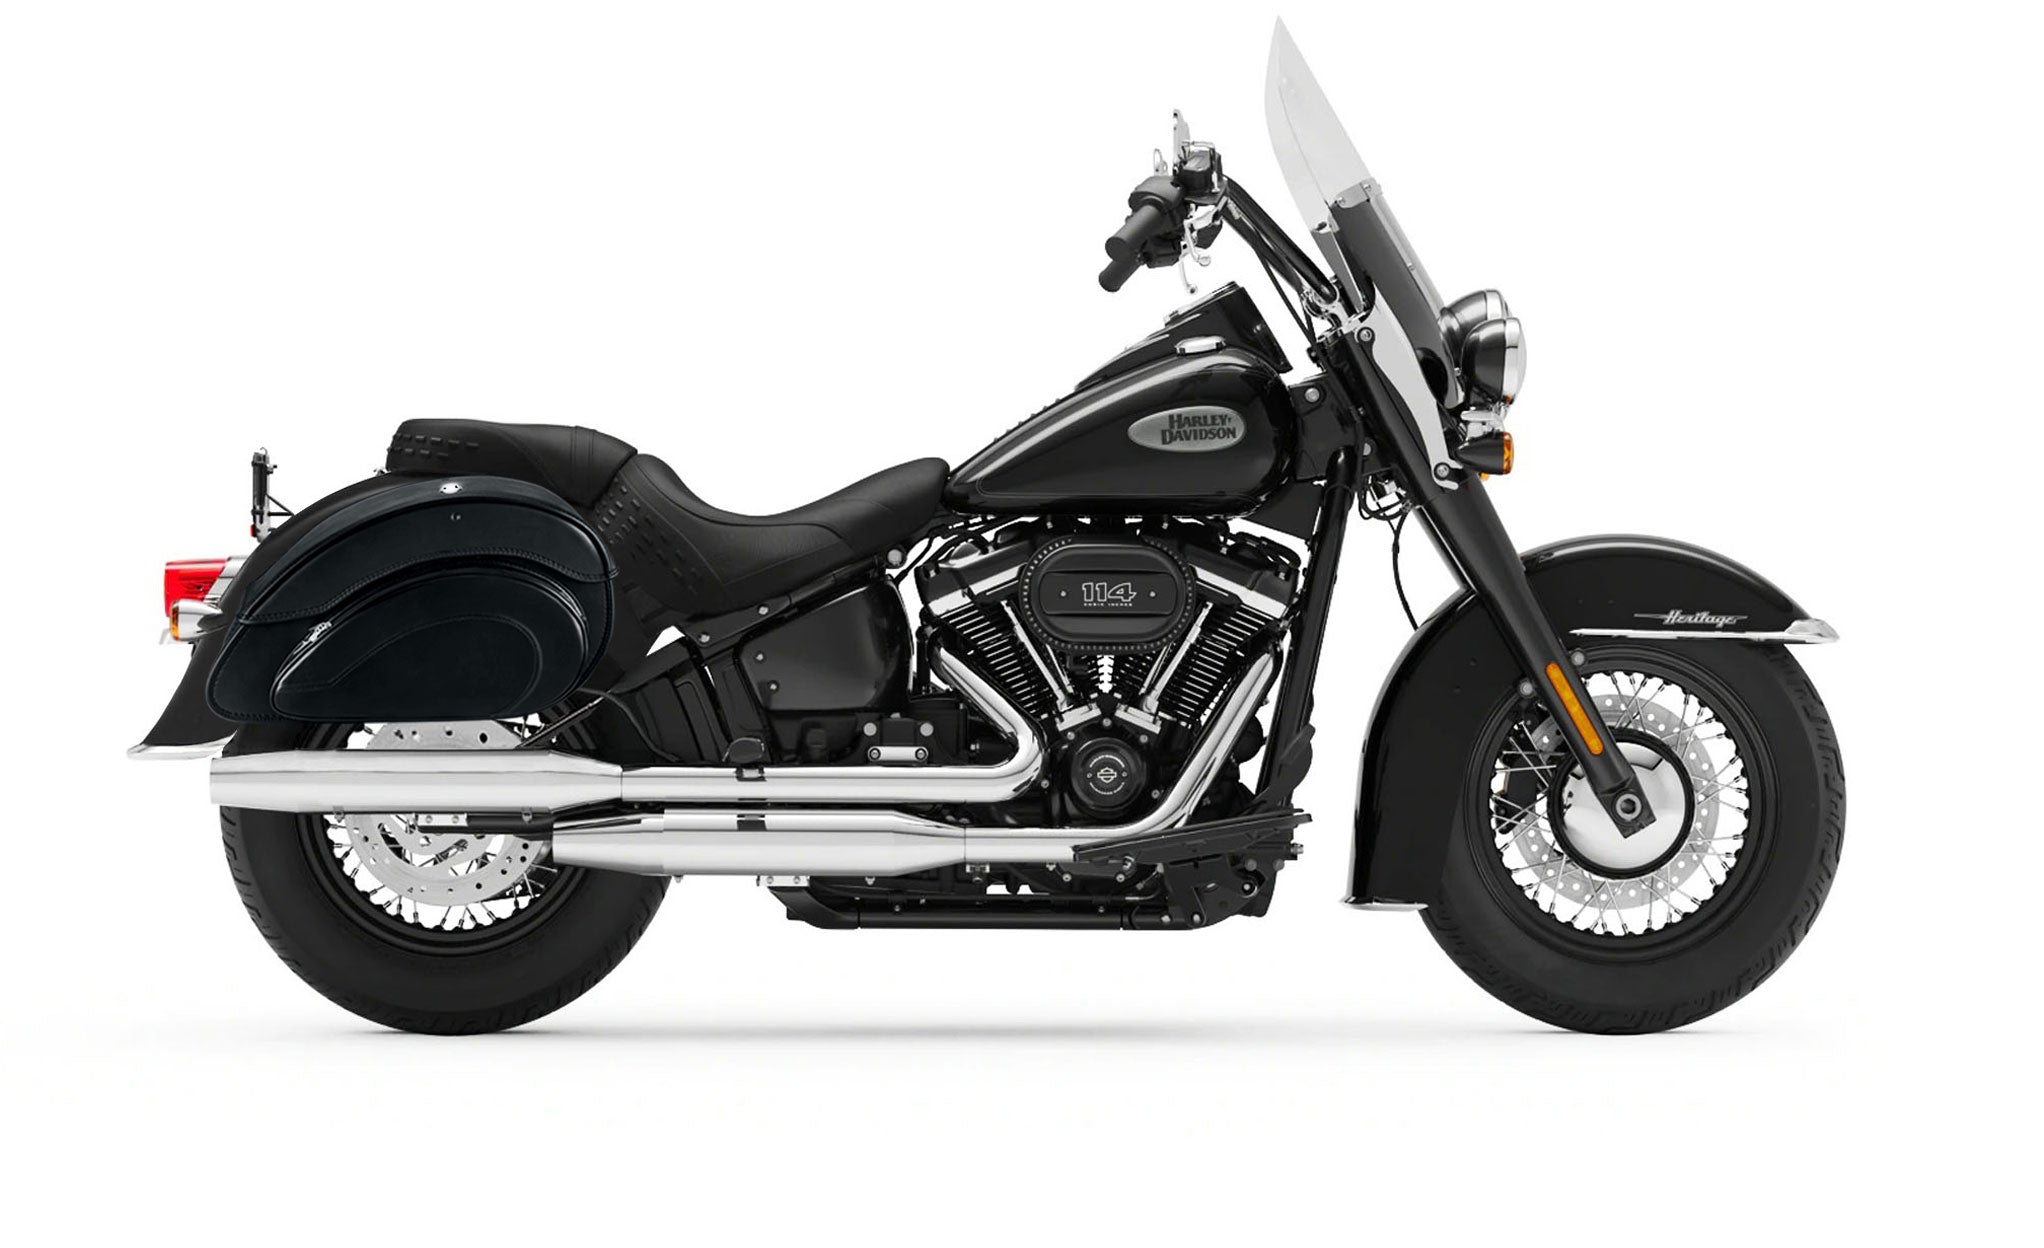 Viking Overlord Large Leather Motorcycle Saddlebags For Harley Softail Heritage Flst I C Ci on Bike Photo @expand